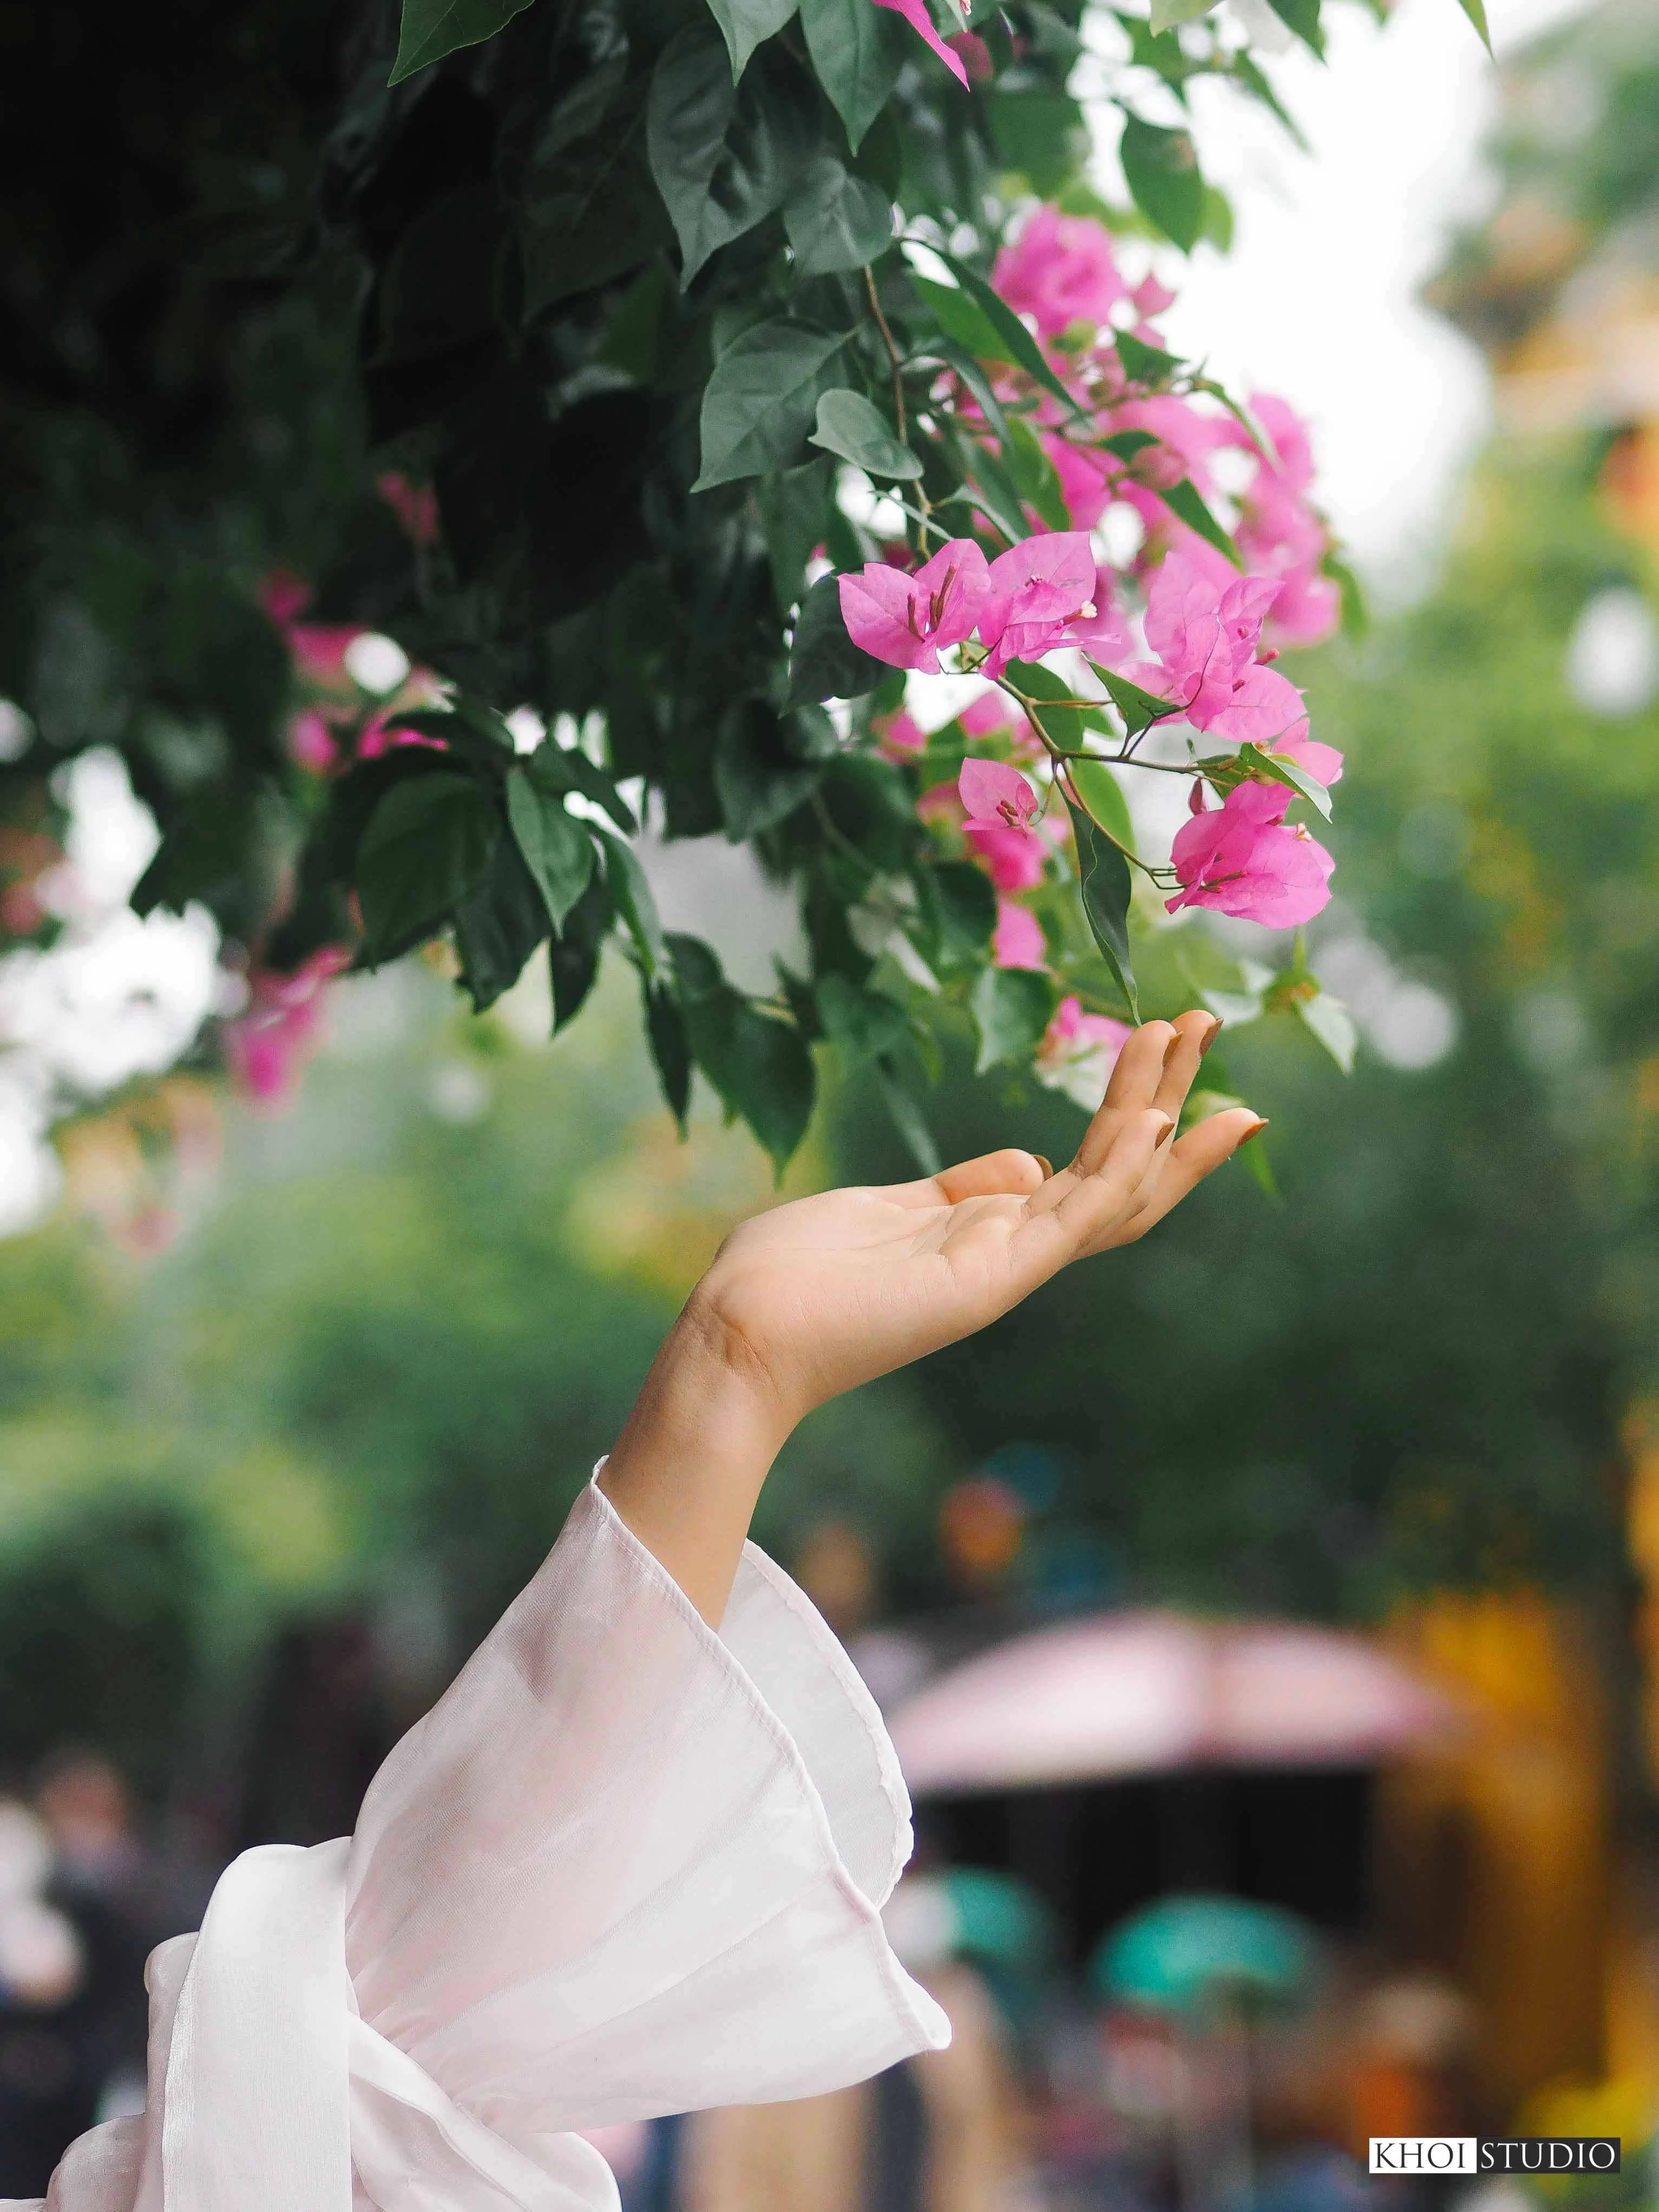 Địa điểm chụp ảnh đẹp 'ngất ngây' với hoa giấy tại phố cổ Hội An